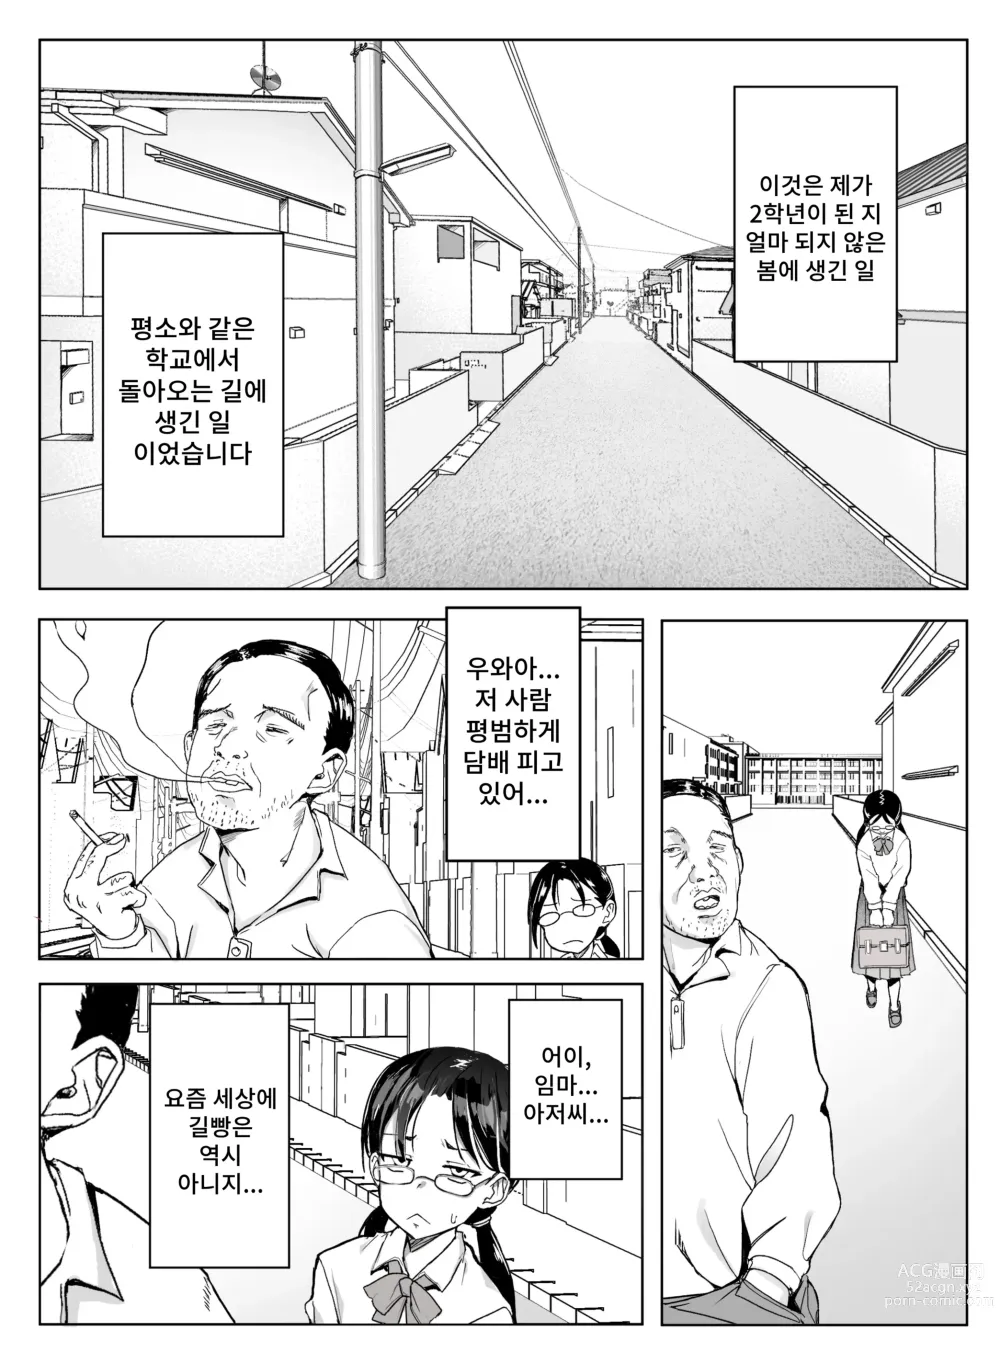 Page 2 of doujinshi 에리카 강제 수치심 이지메 지옥 보지 노출 명령&존엄 파괴 게다리 알몸 포즈로 웃음거리로 전락한 처참한 생활